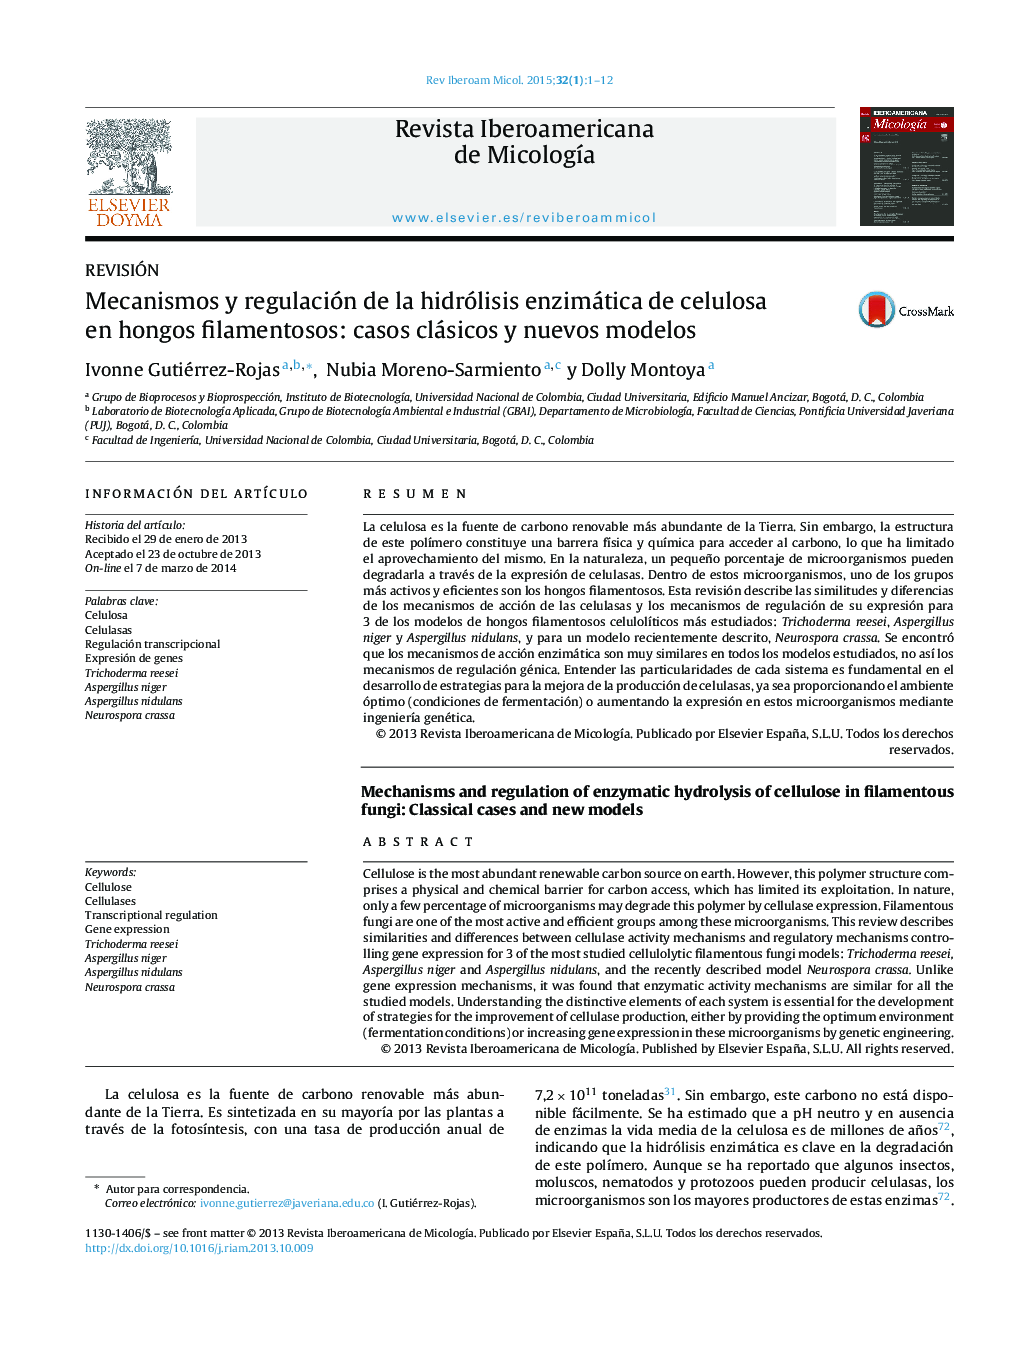 مکانیسم و ​​تنظیم هیدرولیز آنزیمی سلولز در قارچ های رشته ای: موارد کلاسیک و مدل های جدید 